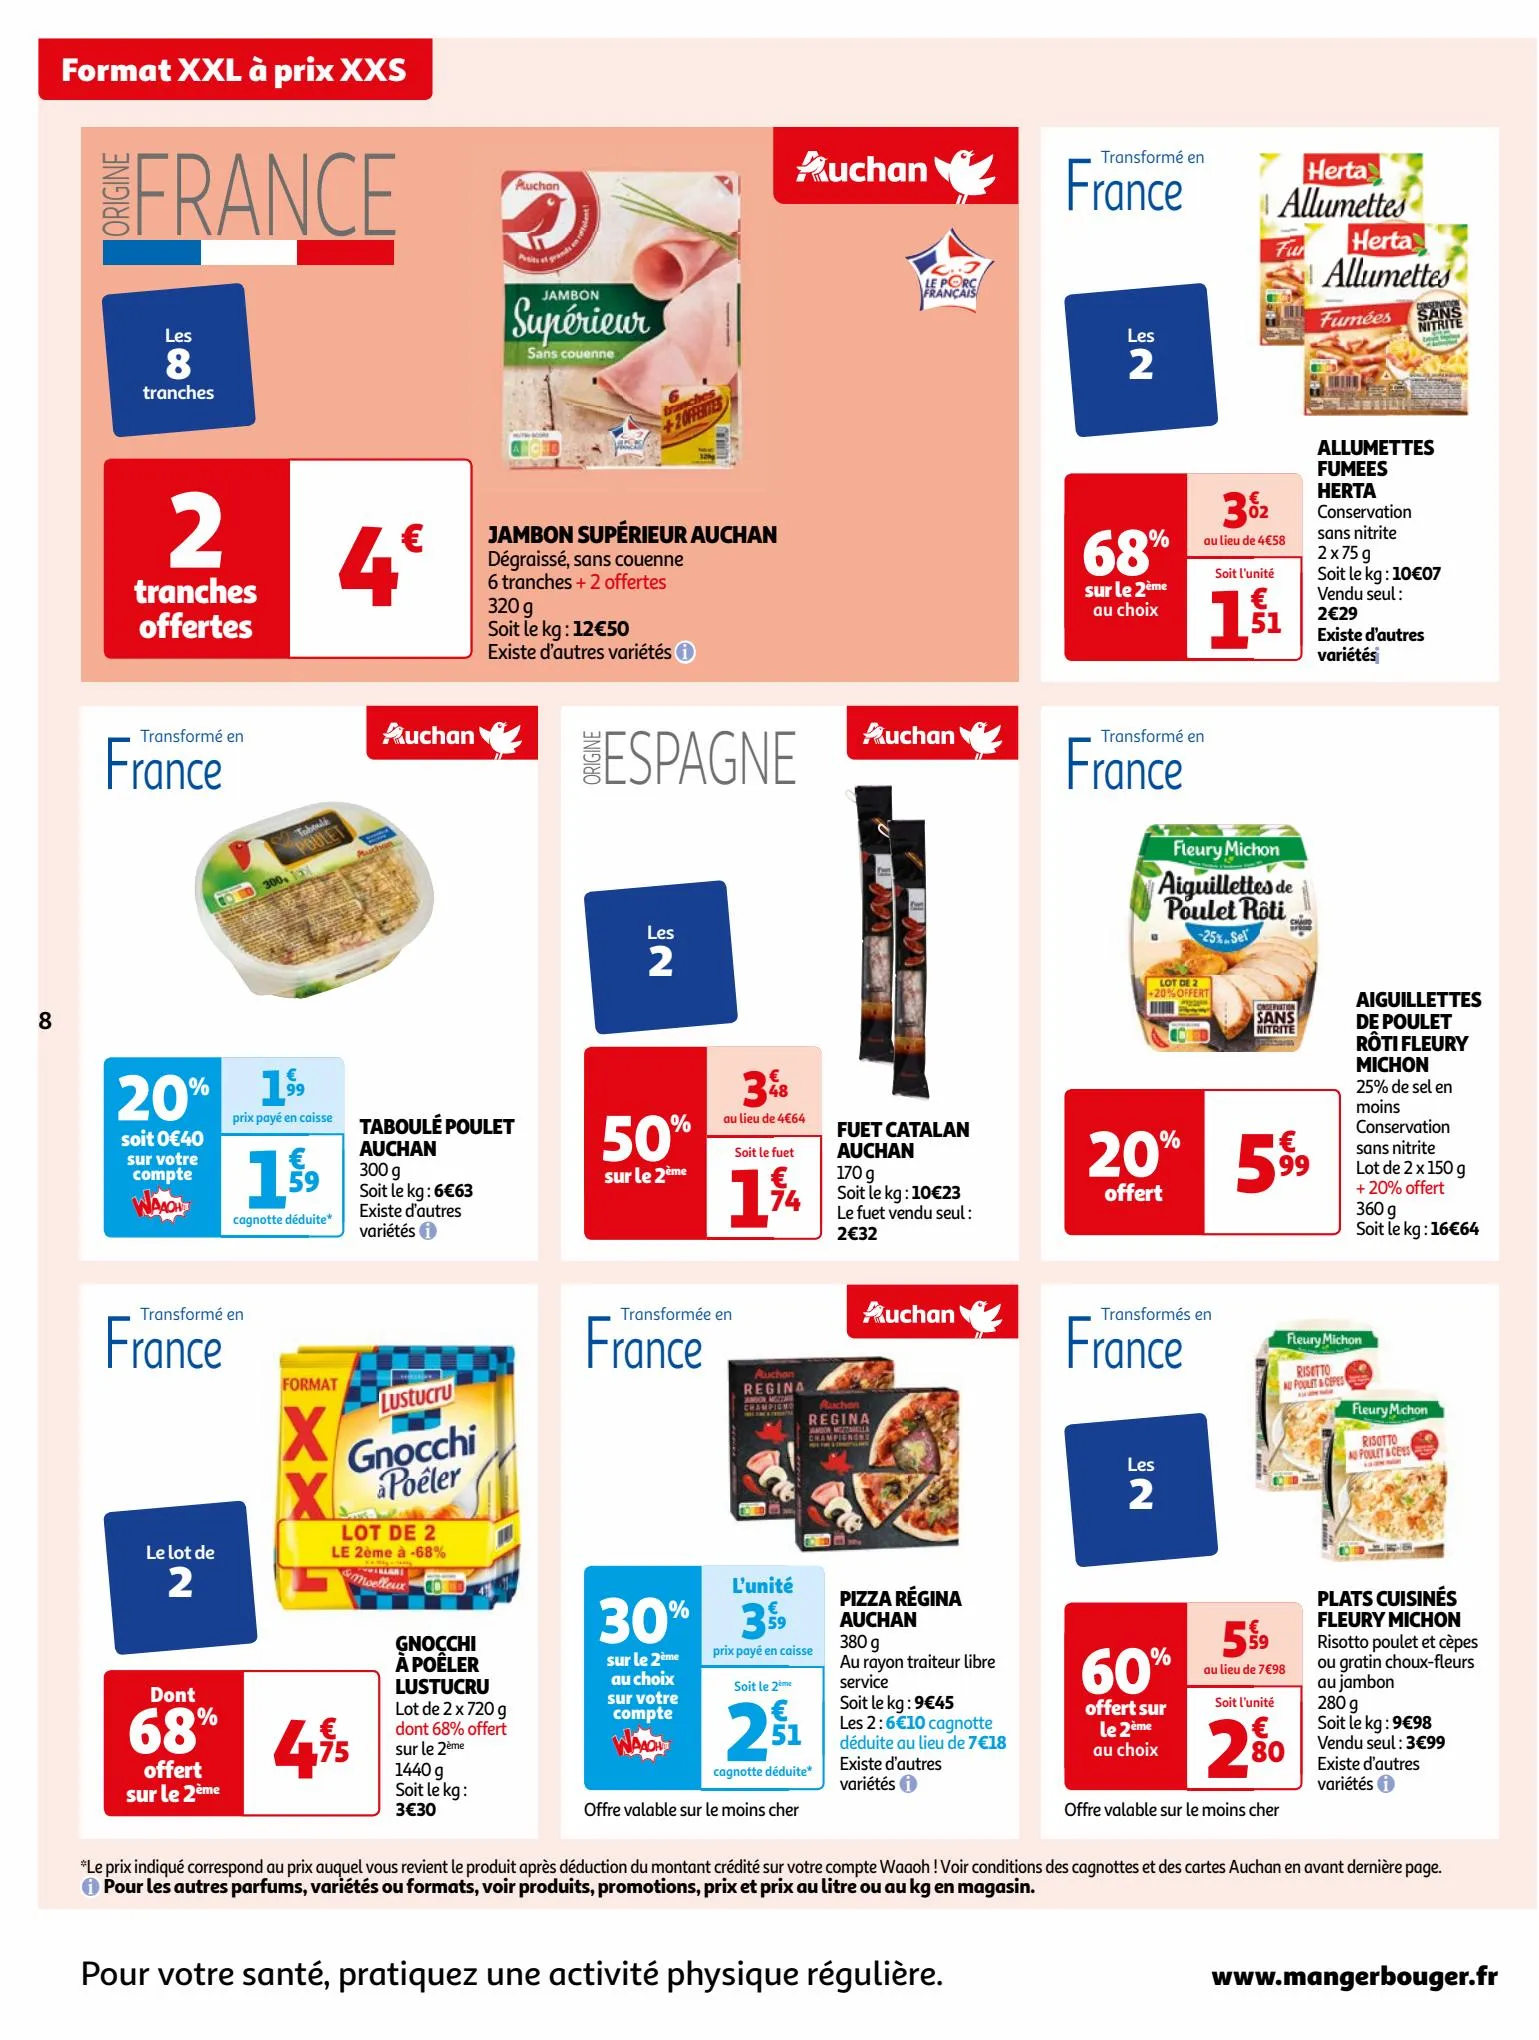 Catalogue Format XXL à prix XXS dans votre supermarché, page 00008